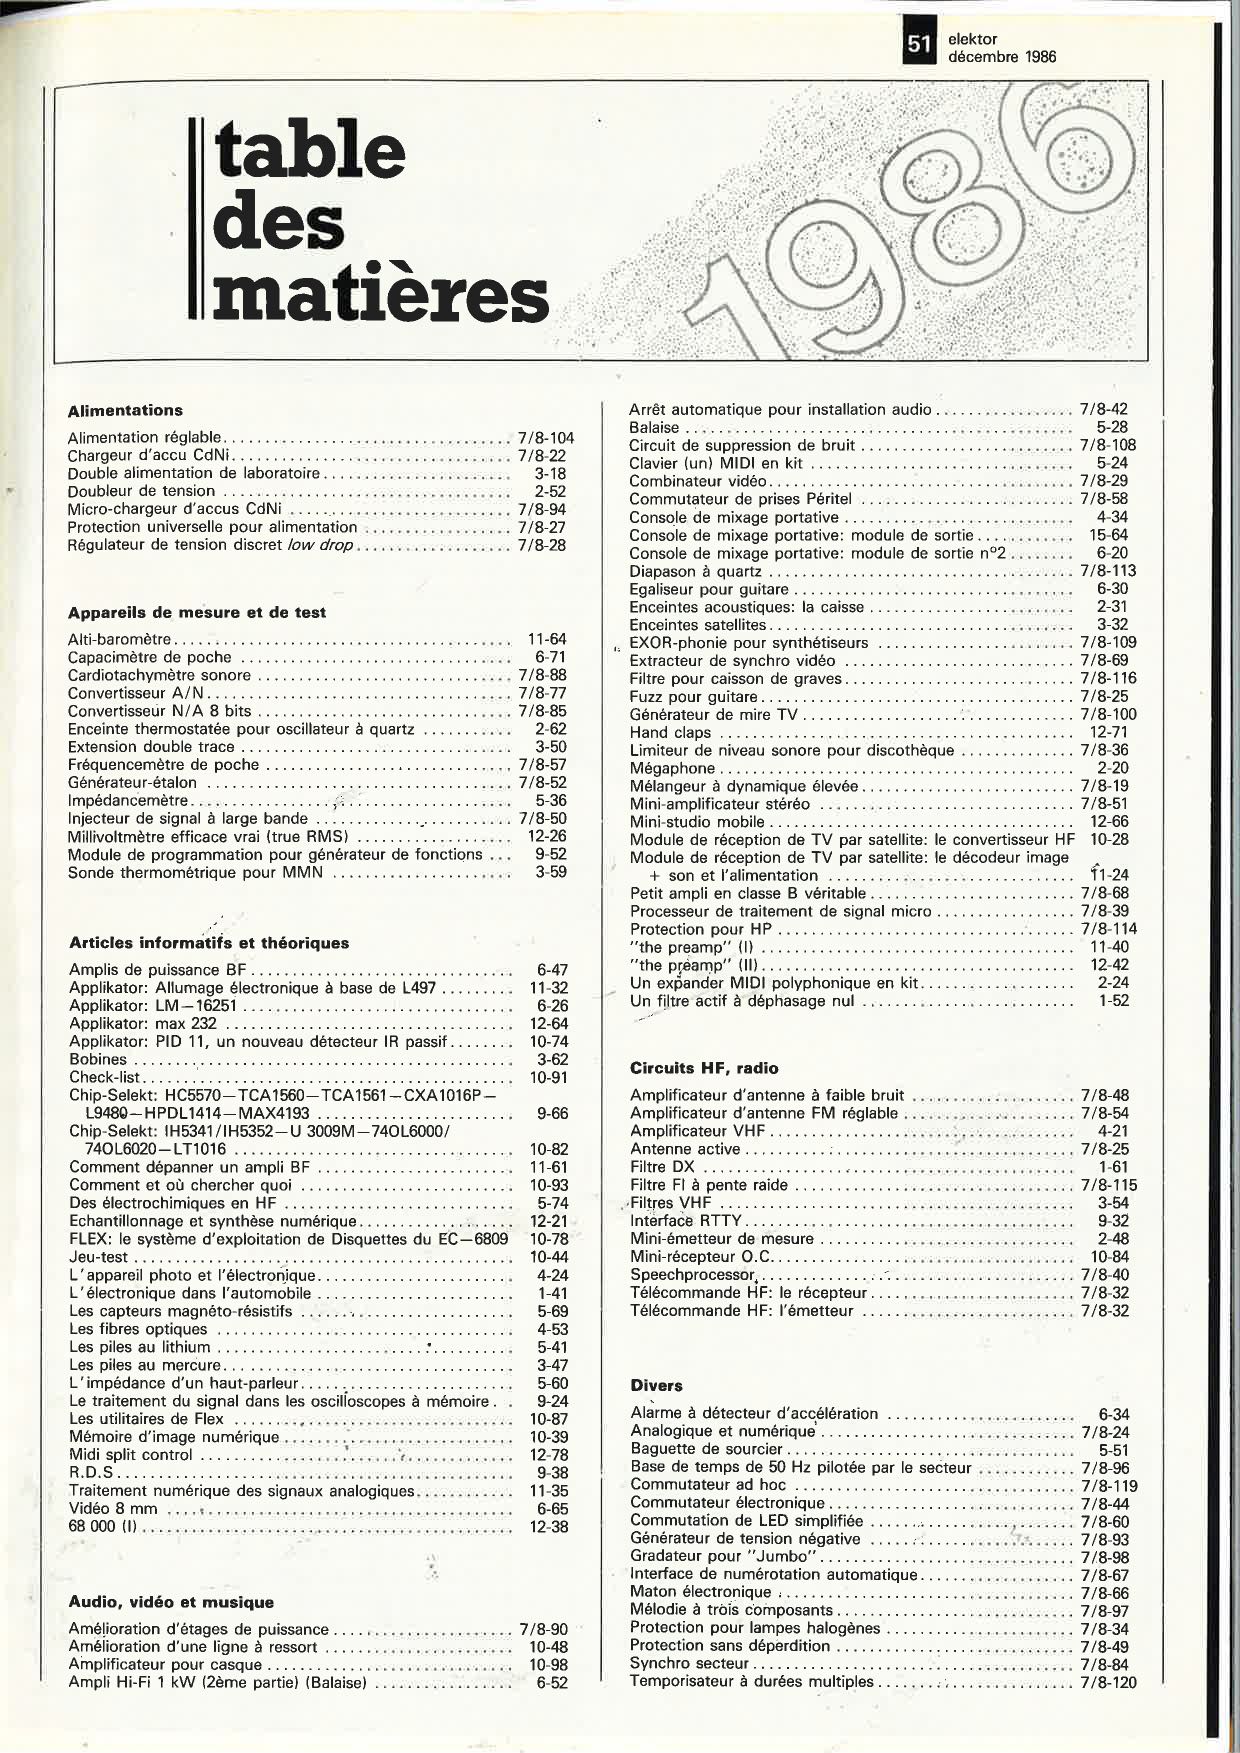 table des matières 1986